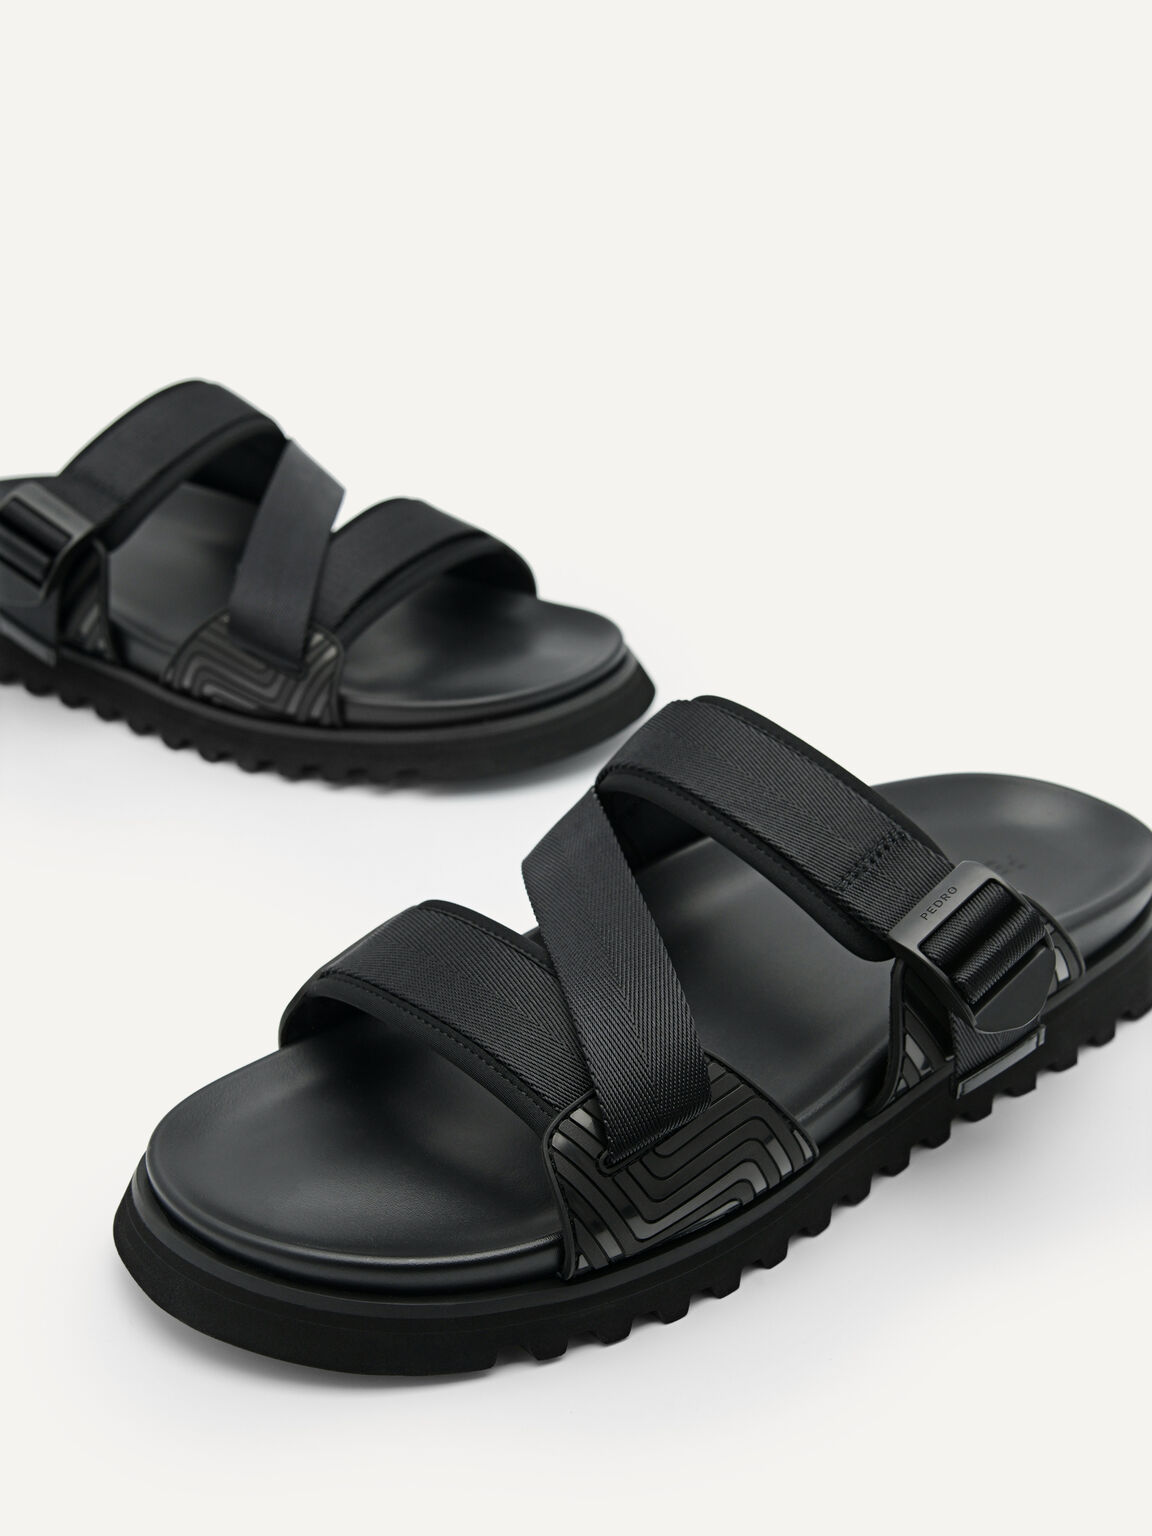 Nylon Strap Sandals, Black